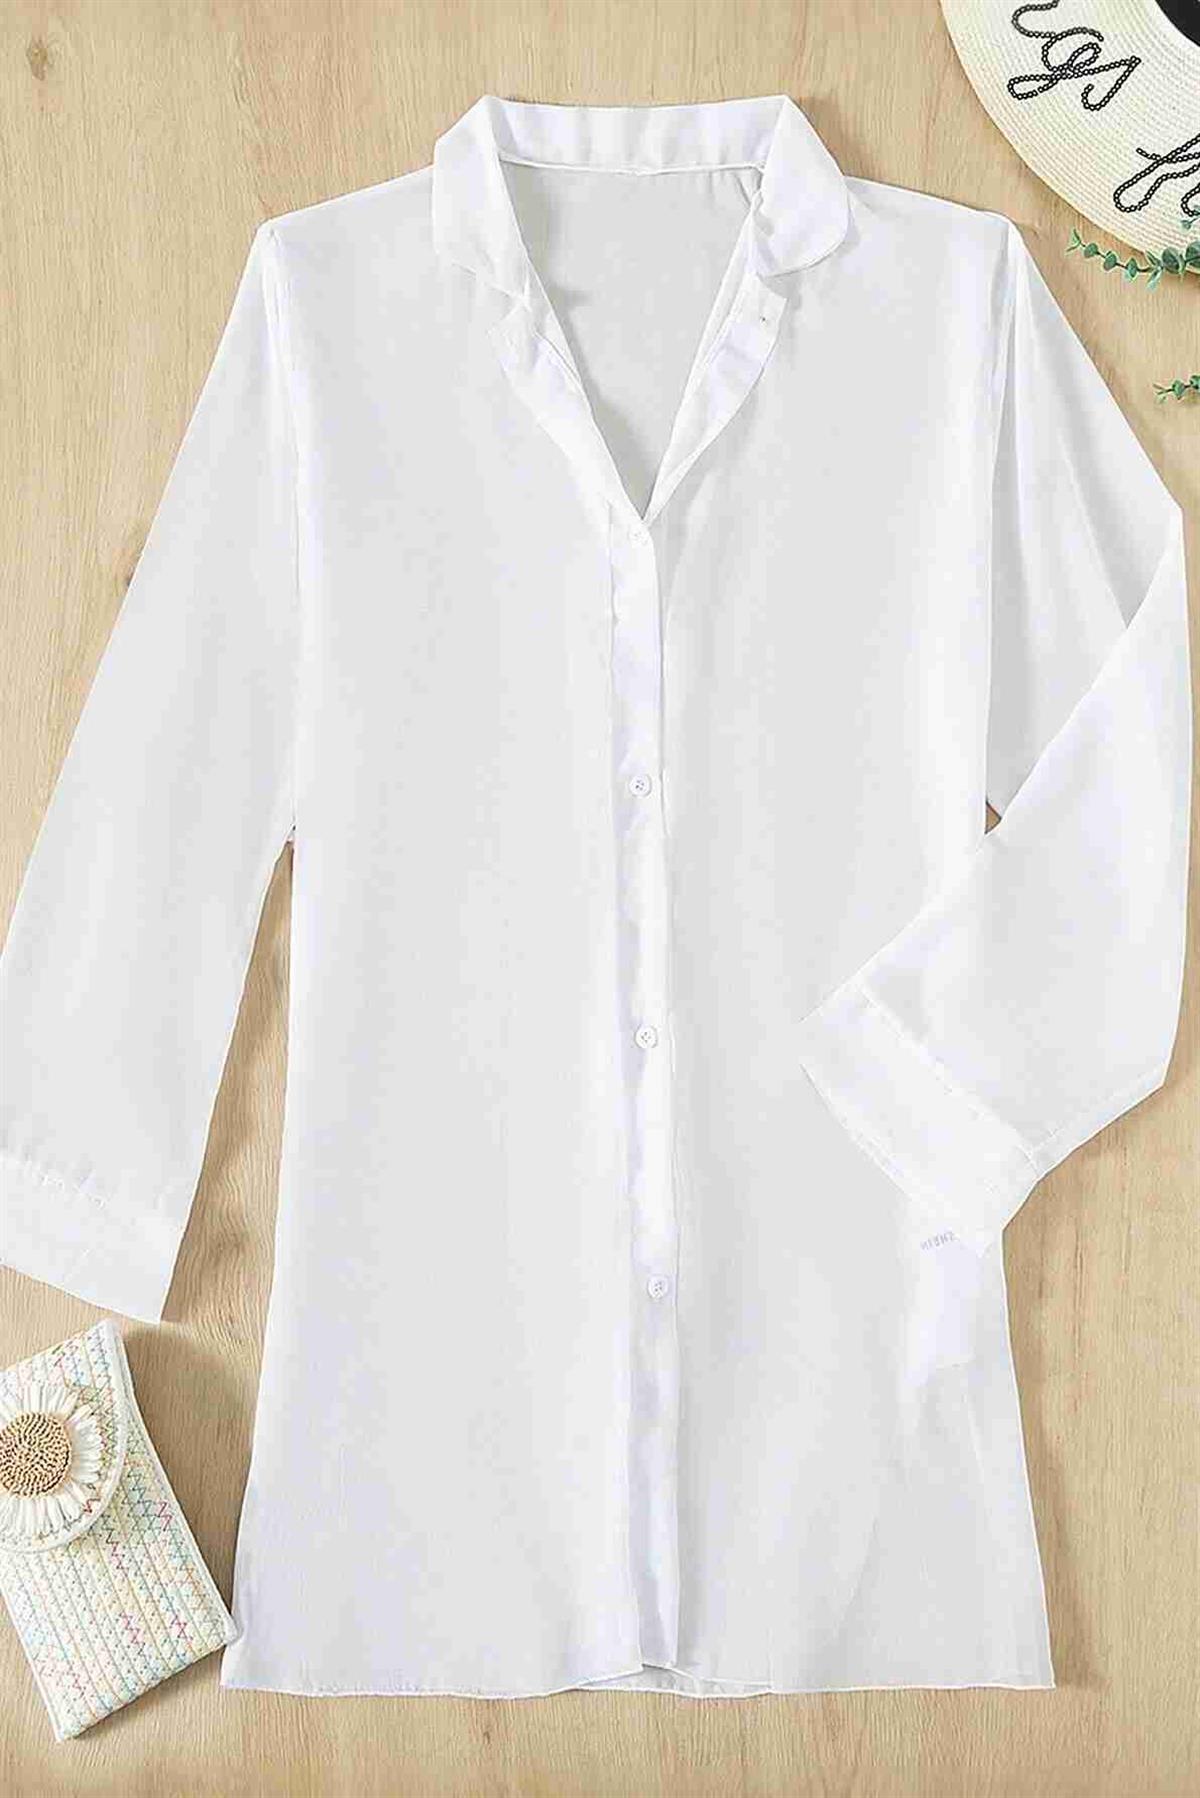 Aria's Closet Şifon Gömlek Plaj Elbisesi Pareo Kimono Kaftan Beyaz